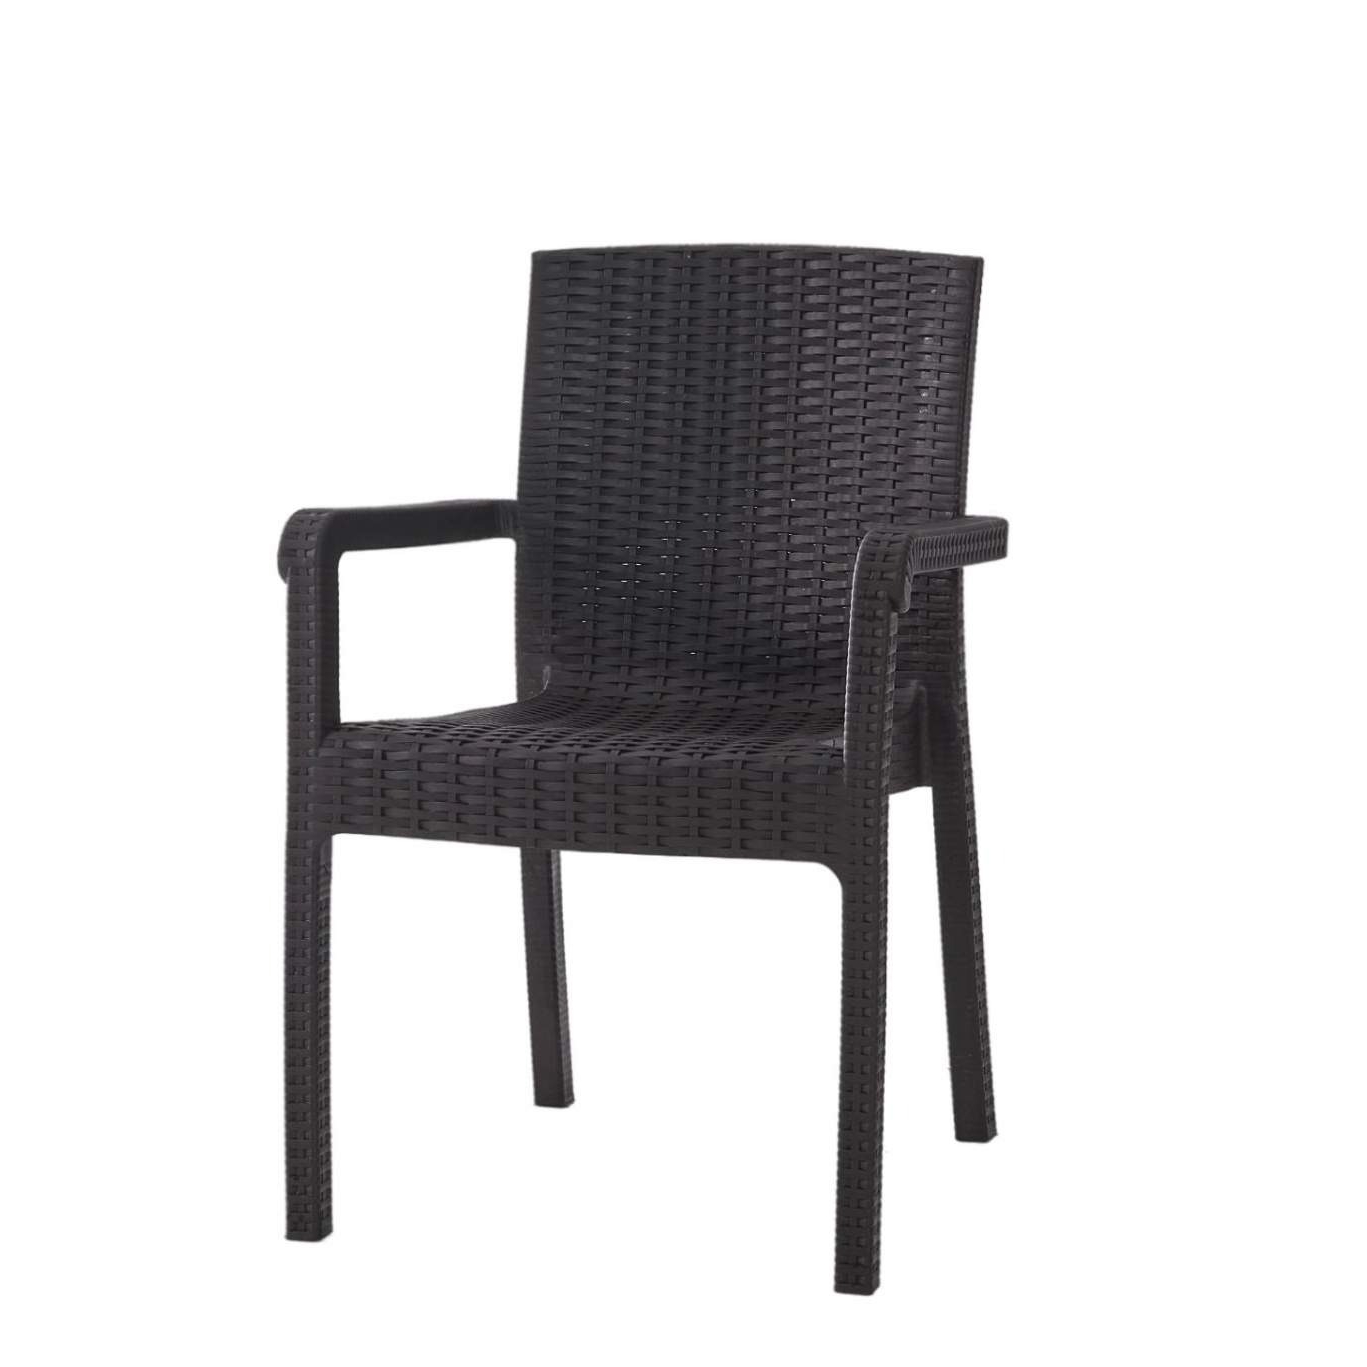 Кресло Heniver Vector темно-коричневое 58х45х85 см кресло ns rattan mavi 57x59x87cm темно коричневое